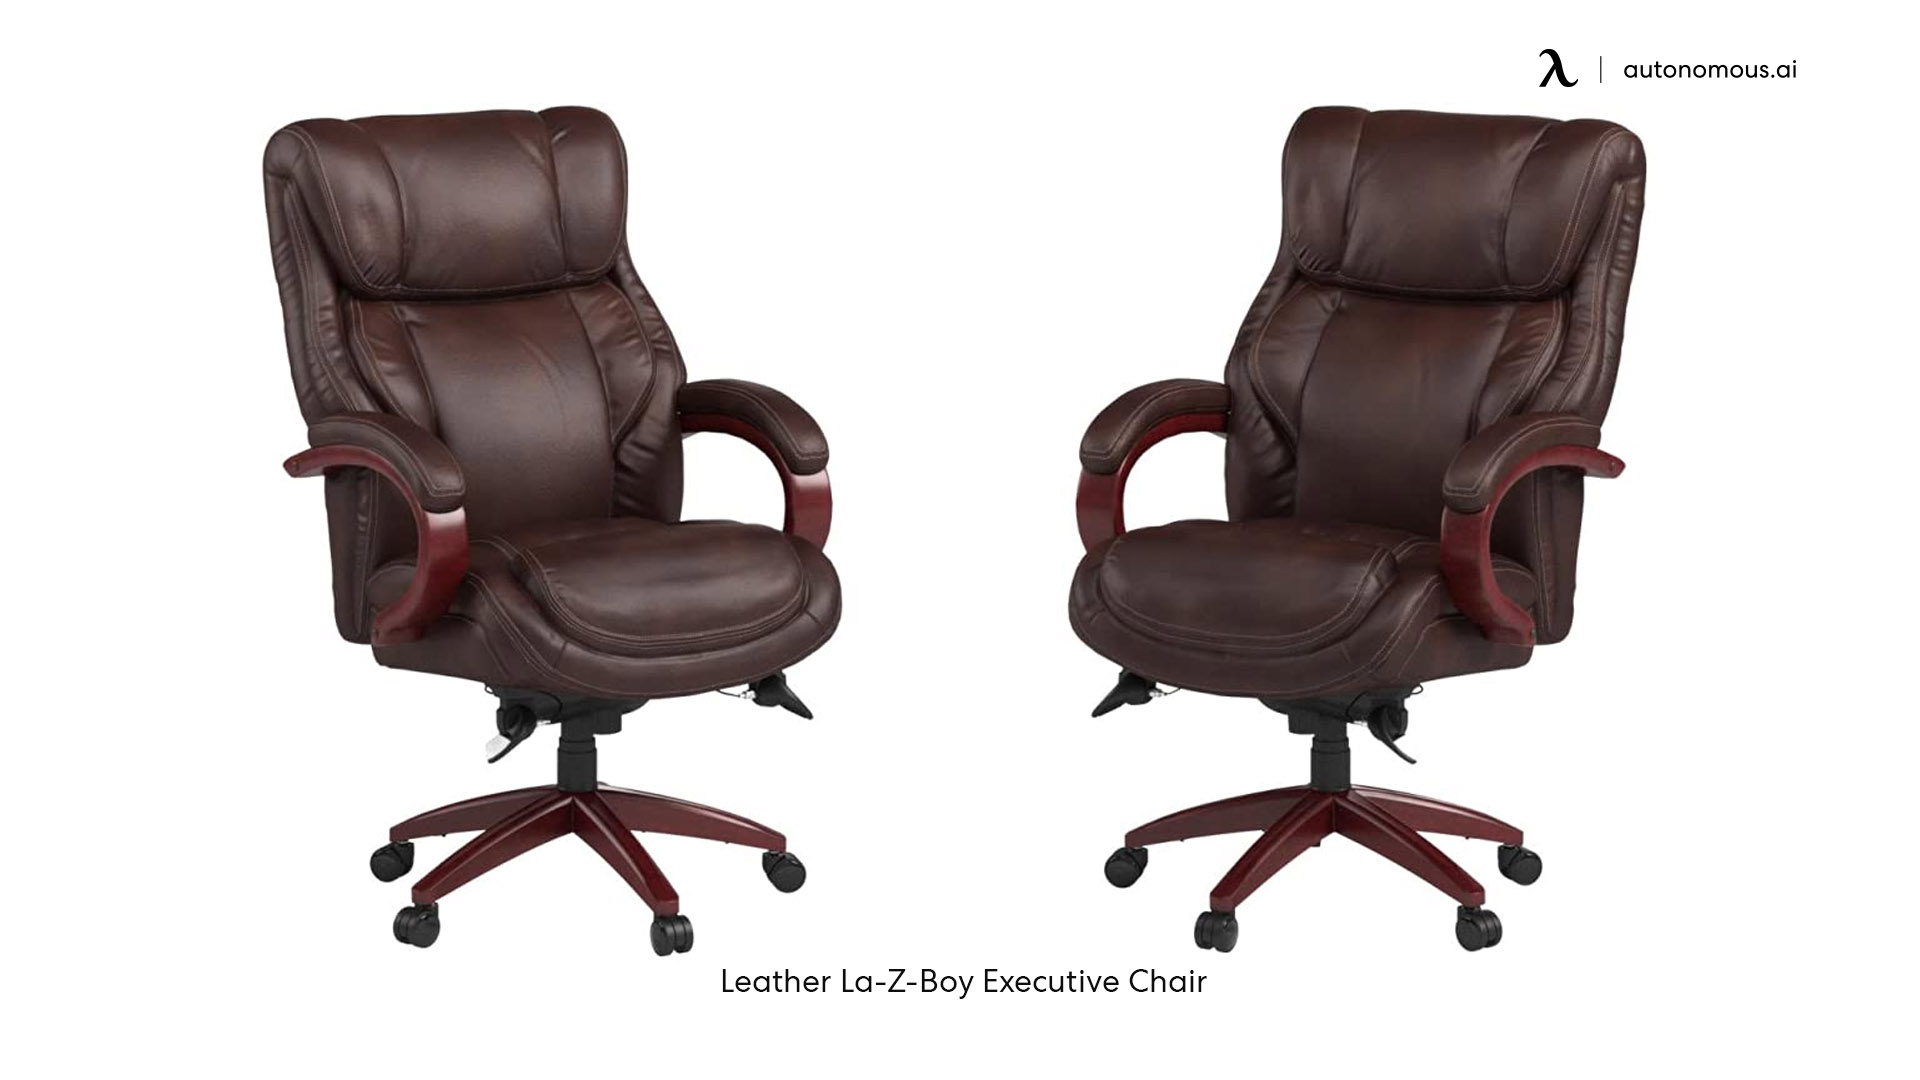 Leather La-Z-Boy best office chair for sciatica